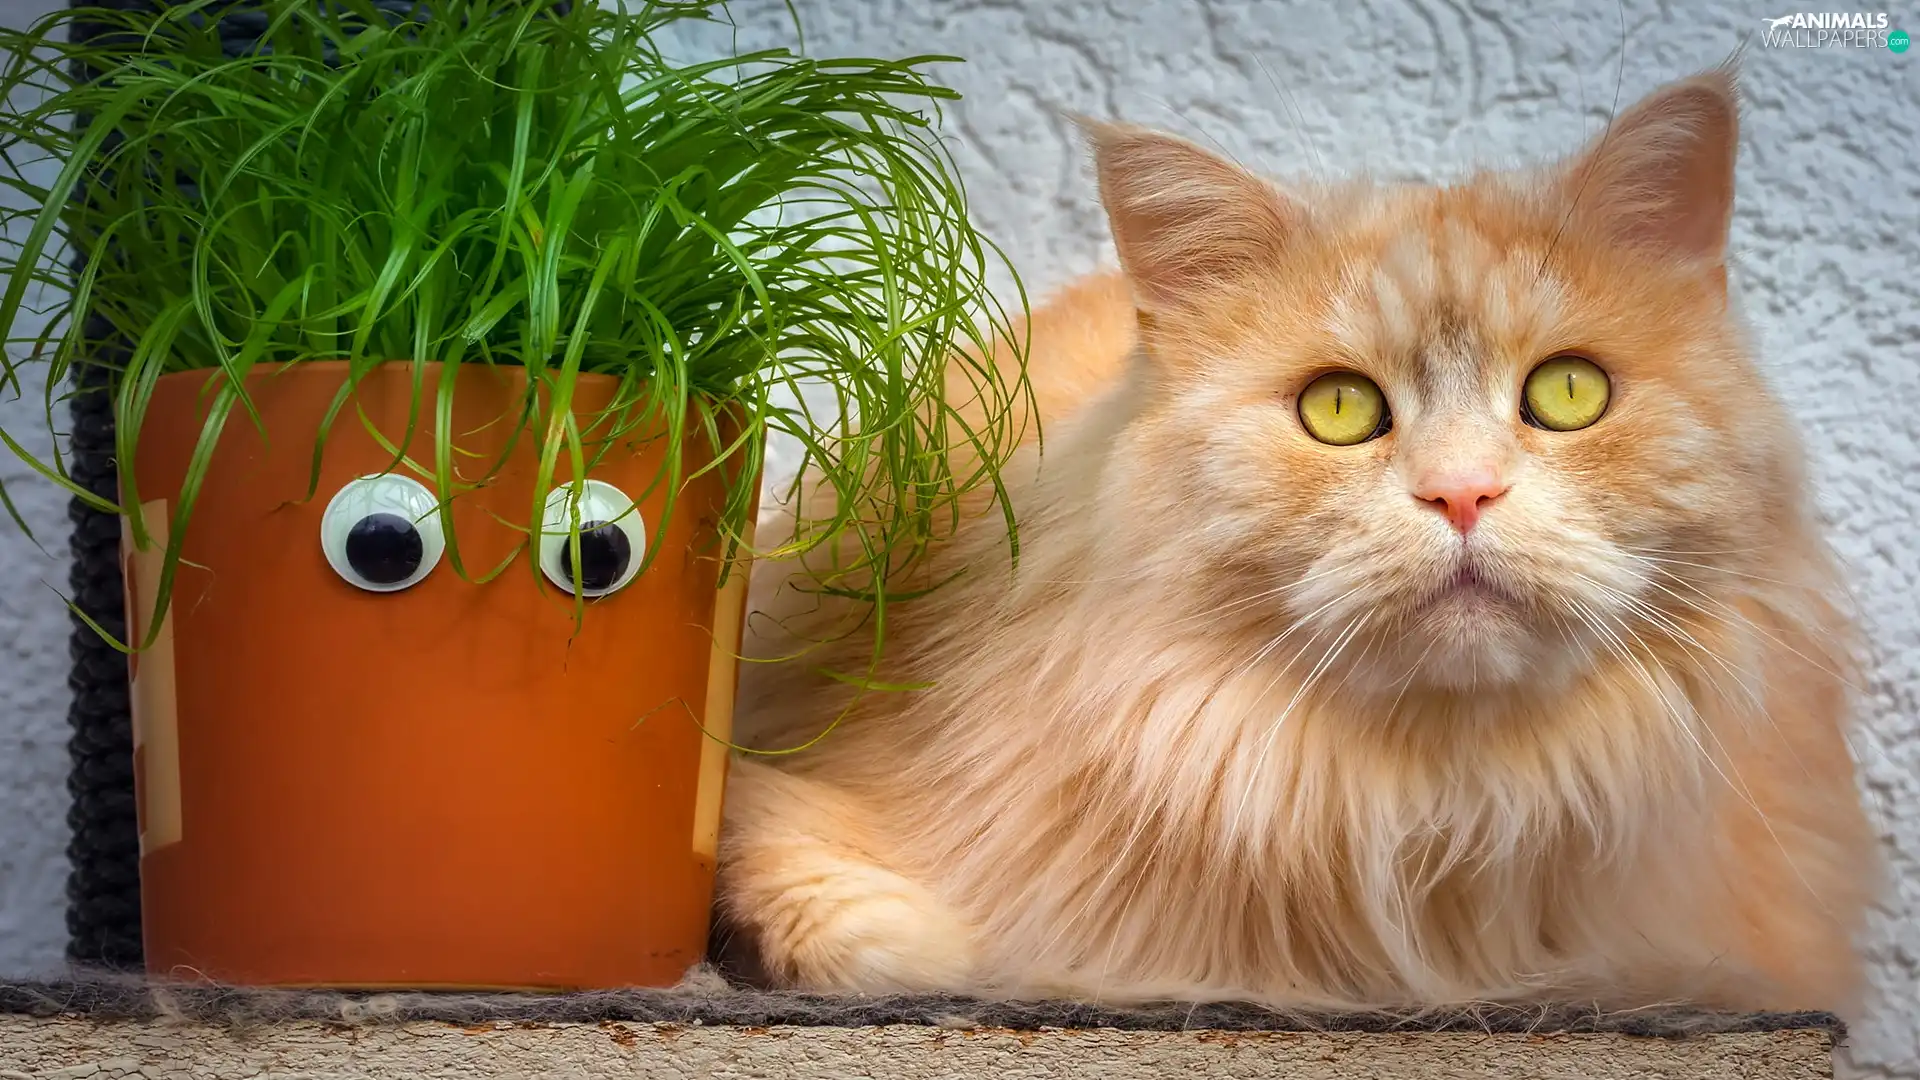 ginger, pot, grass, cat